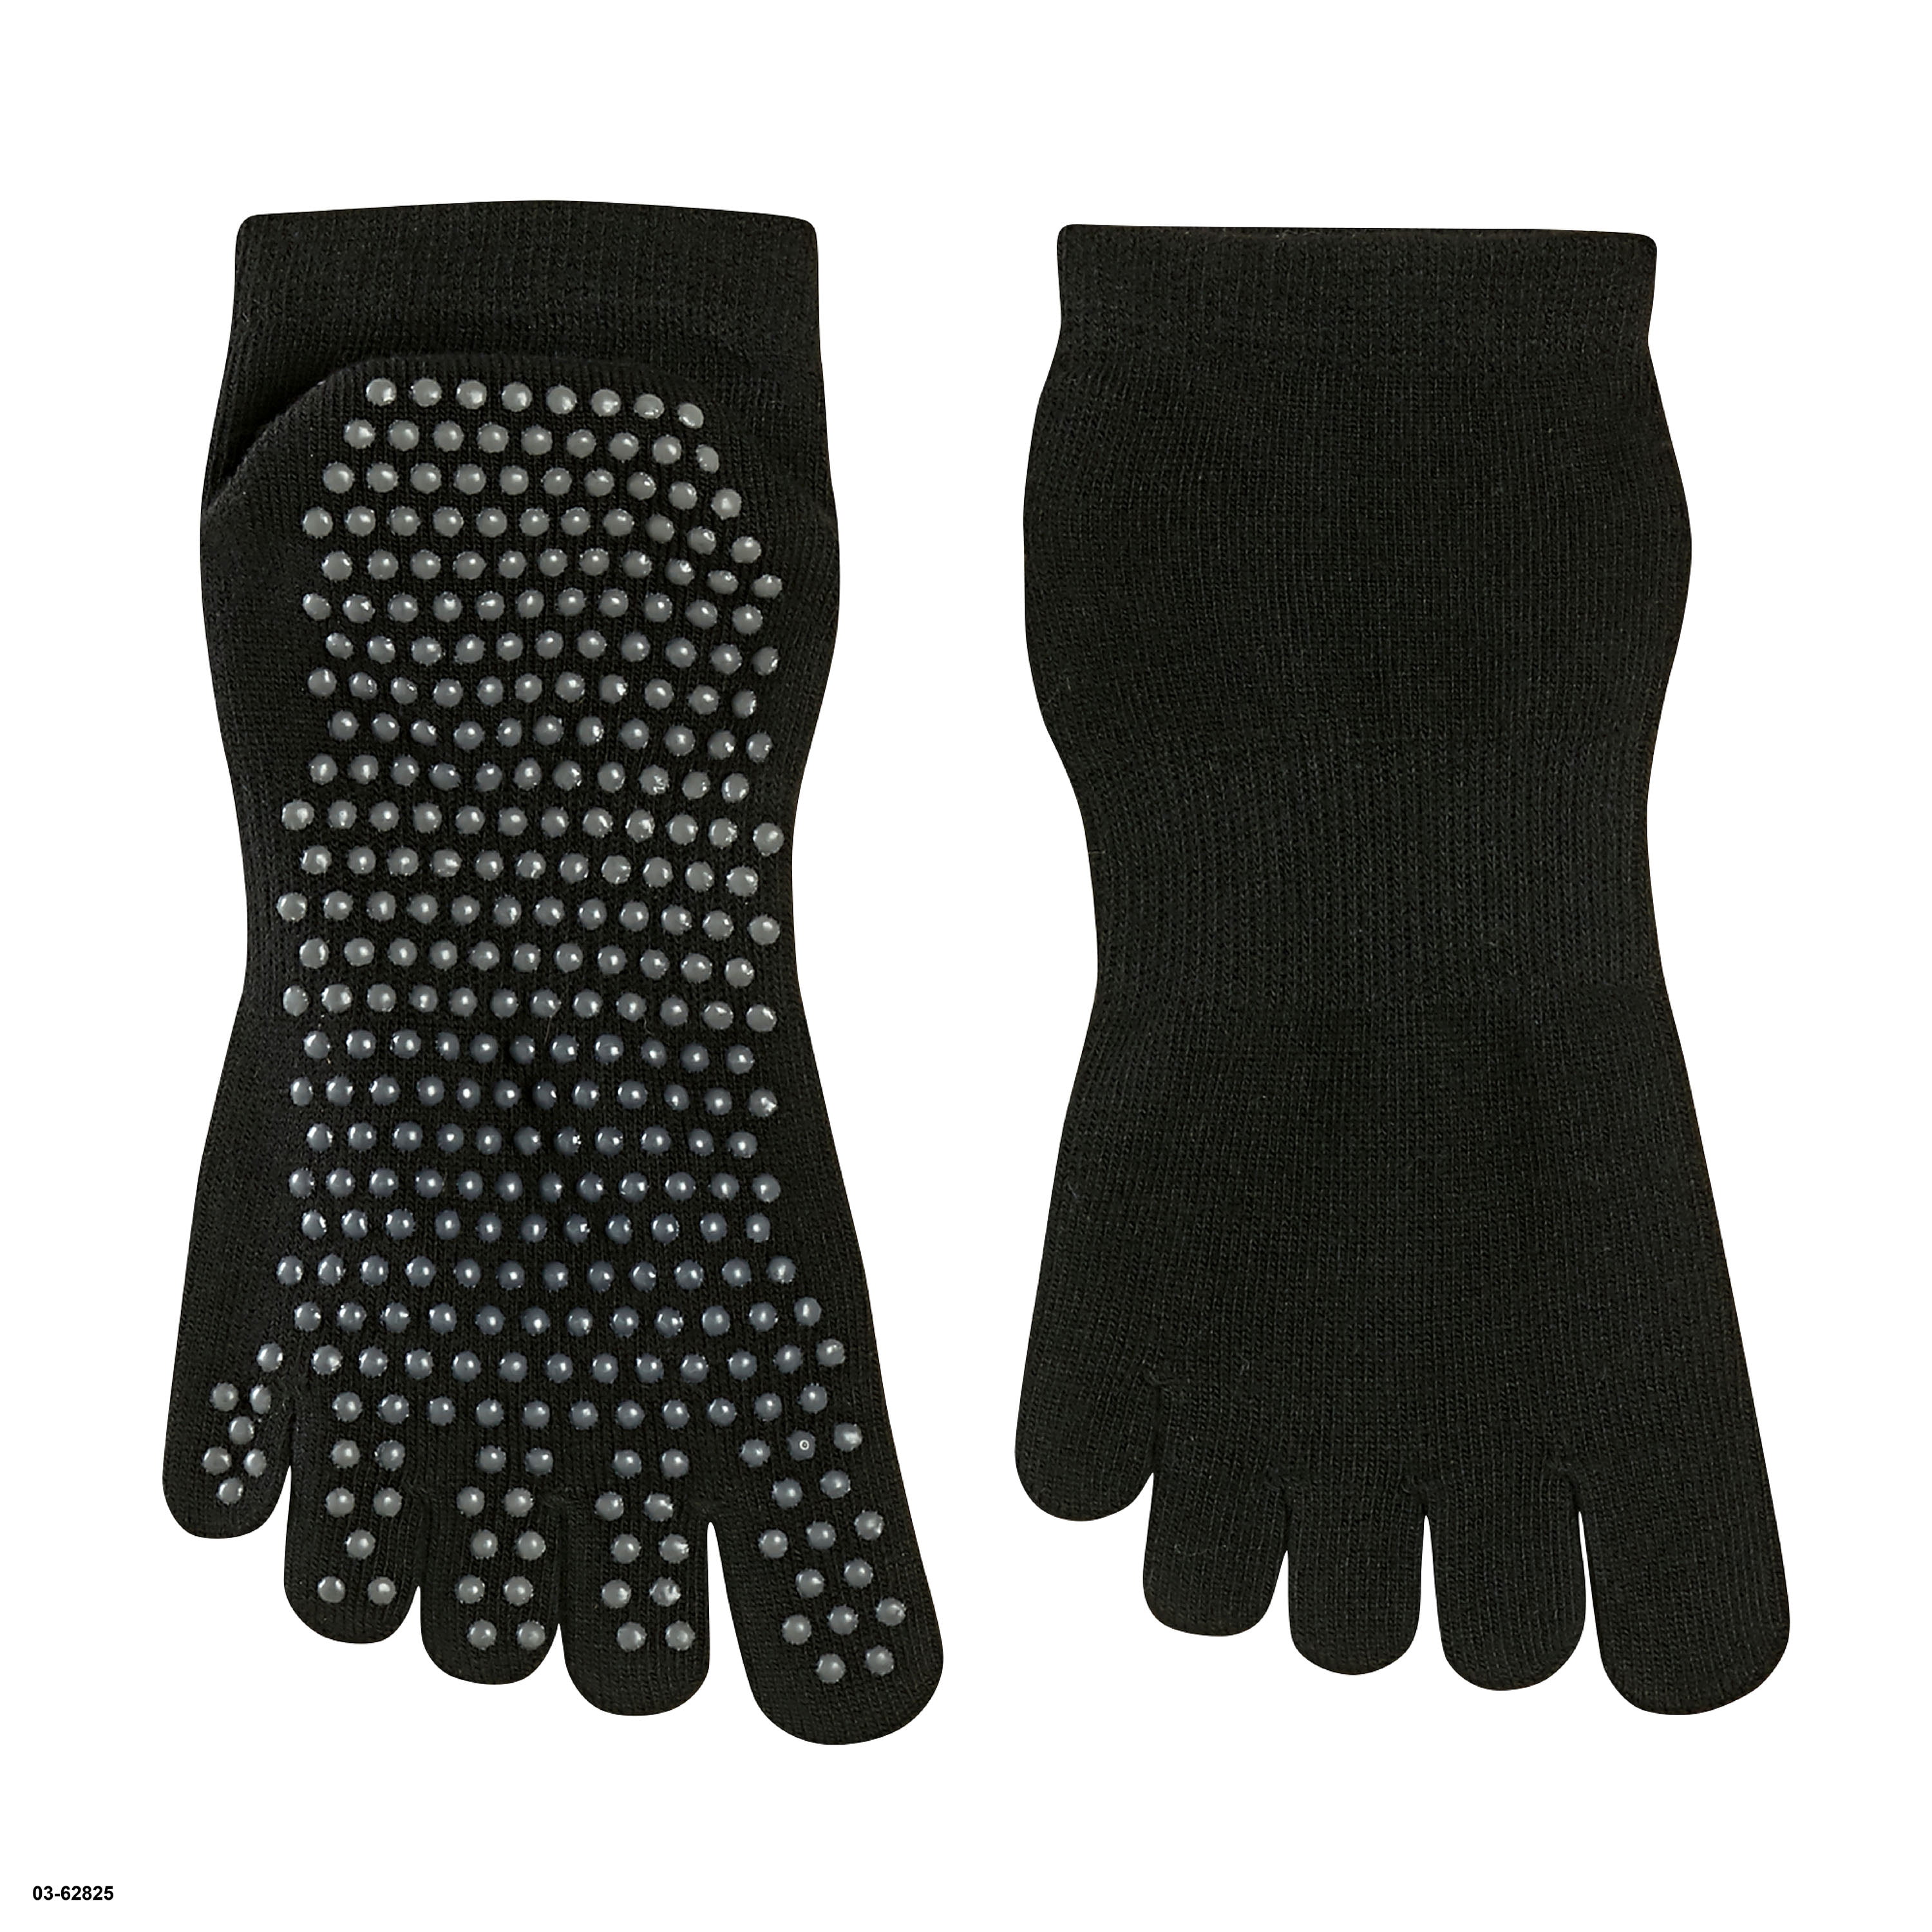 Evolve by Gaiam Grippy Yoga Socks, 2 Pack, Black/Grey 